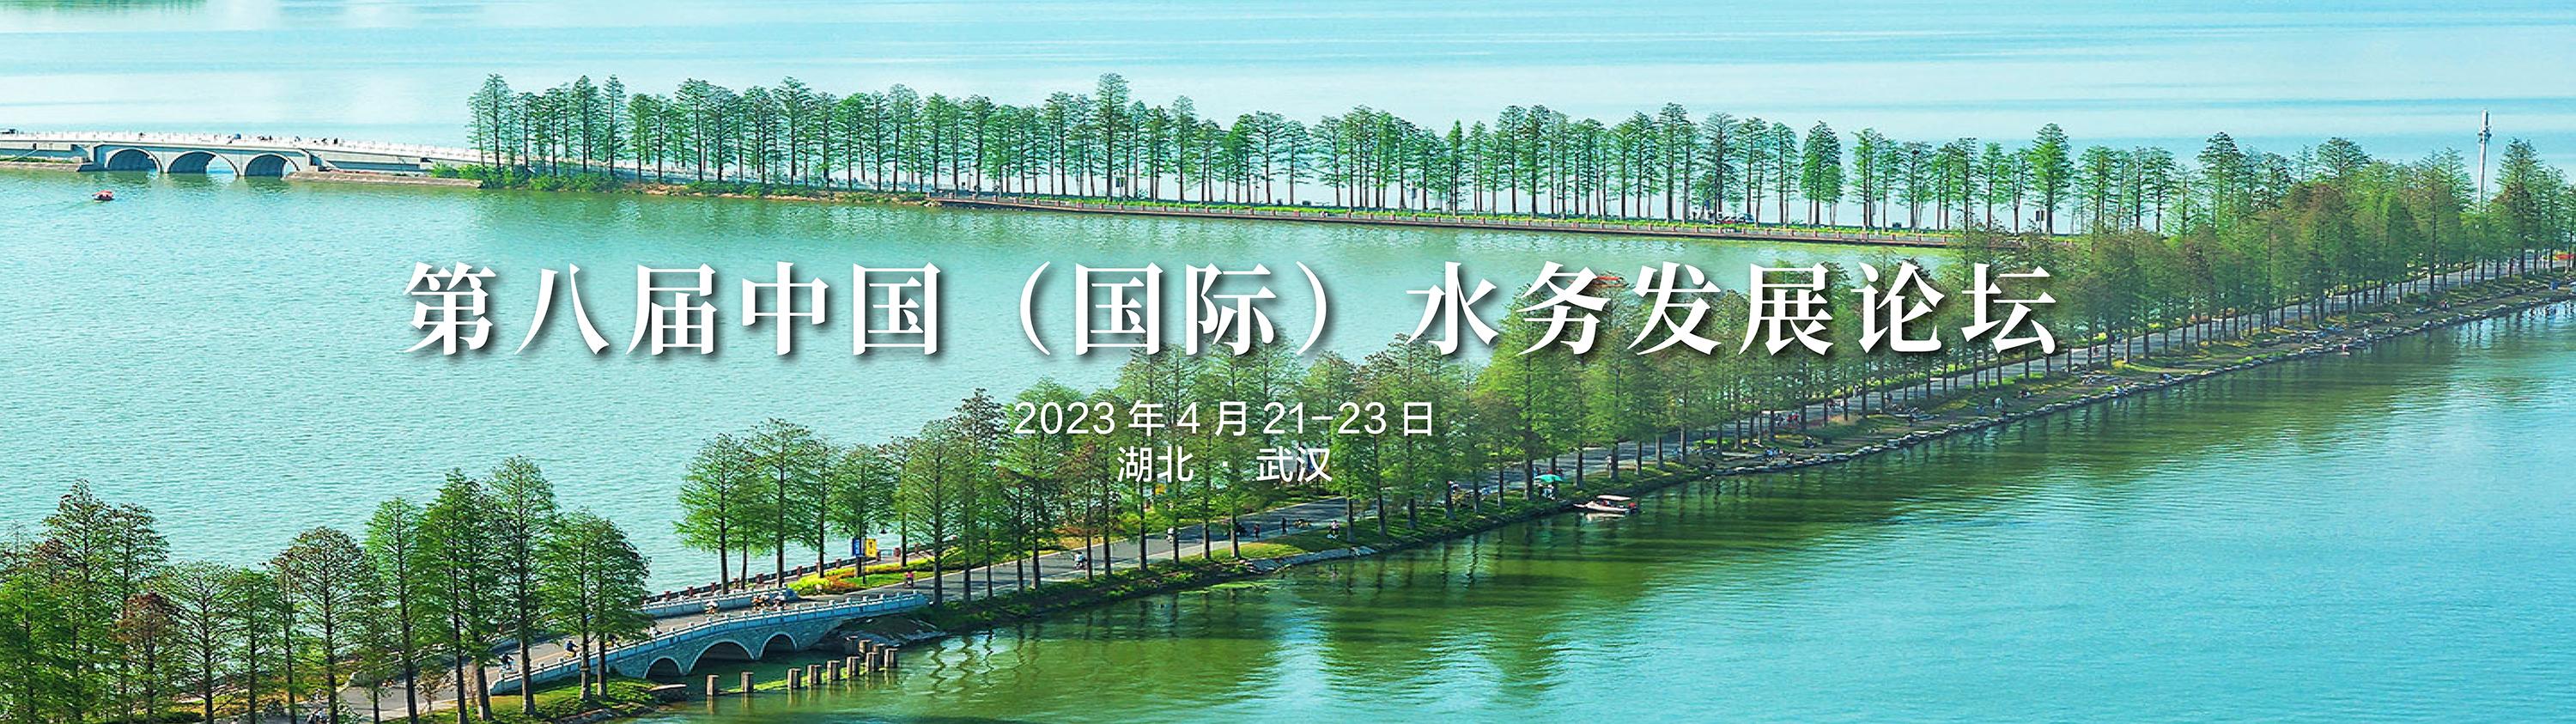 “第八屆中國（國際）水務發展論壇”參會指南